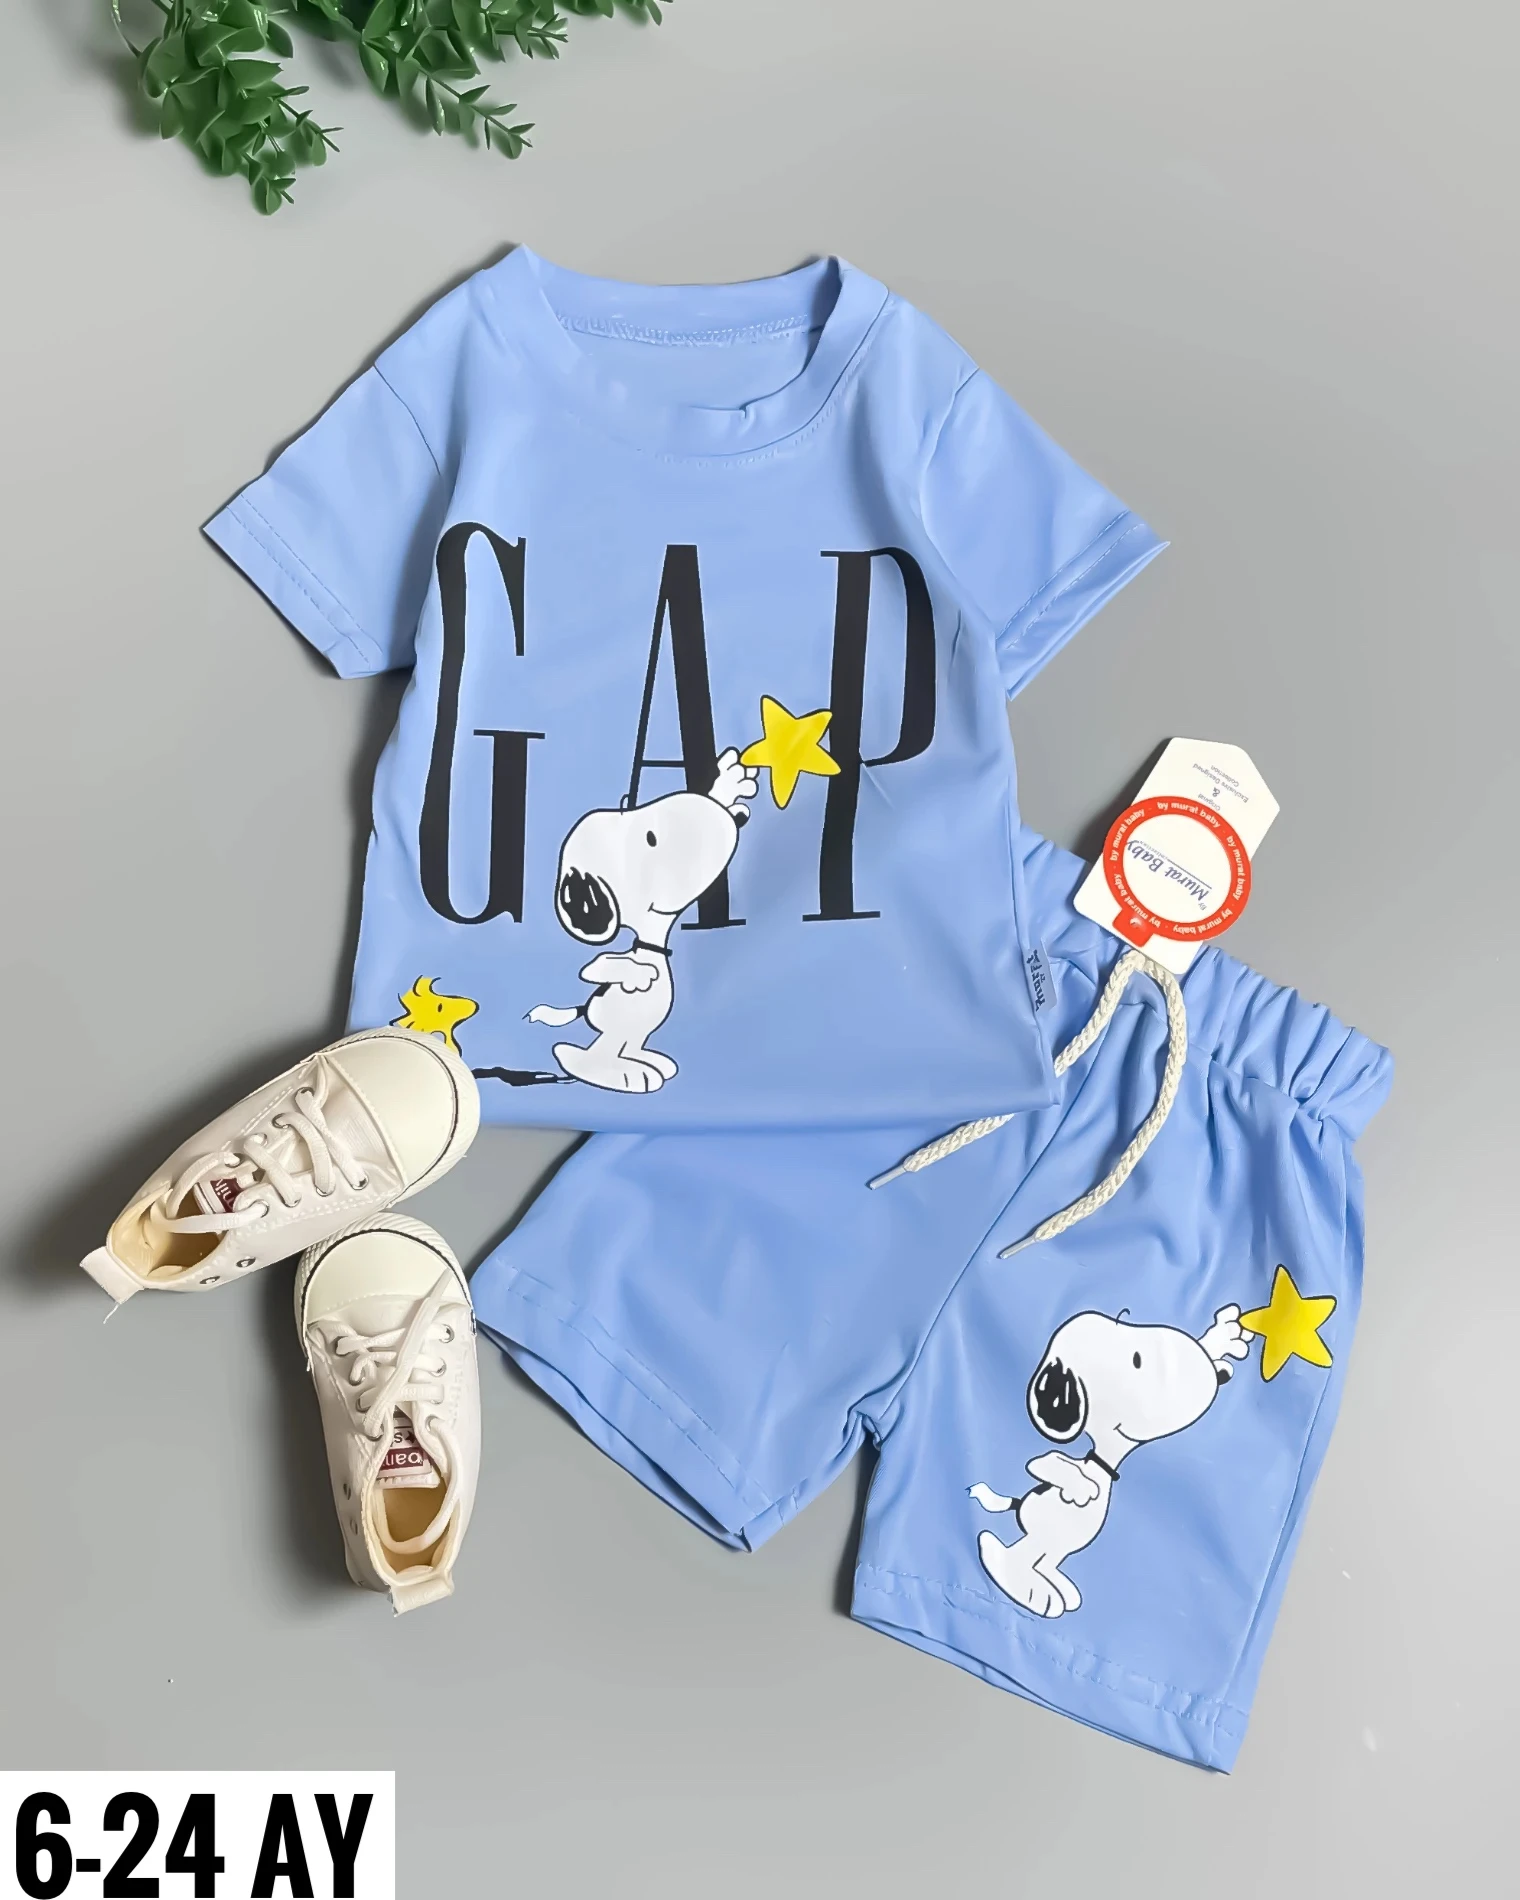 Miniapple Yazlık Gapp Snopp Baskılı 2’li Bebek Takımı - MAVİ